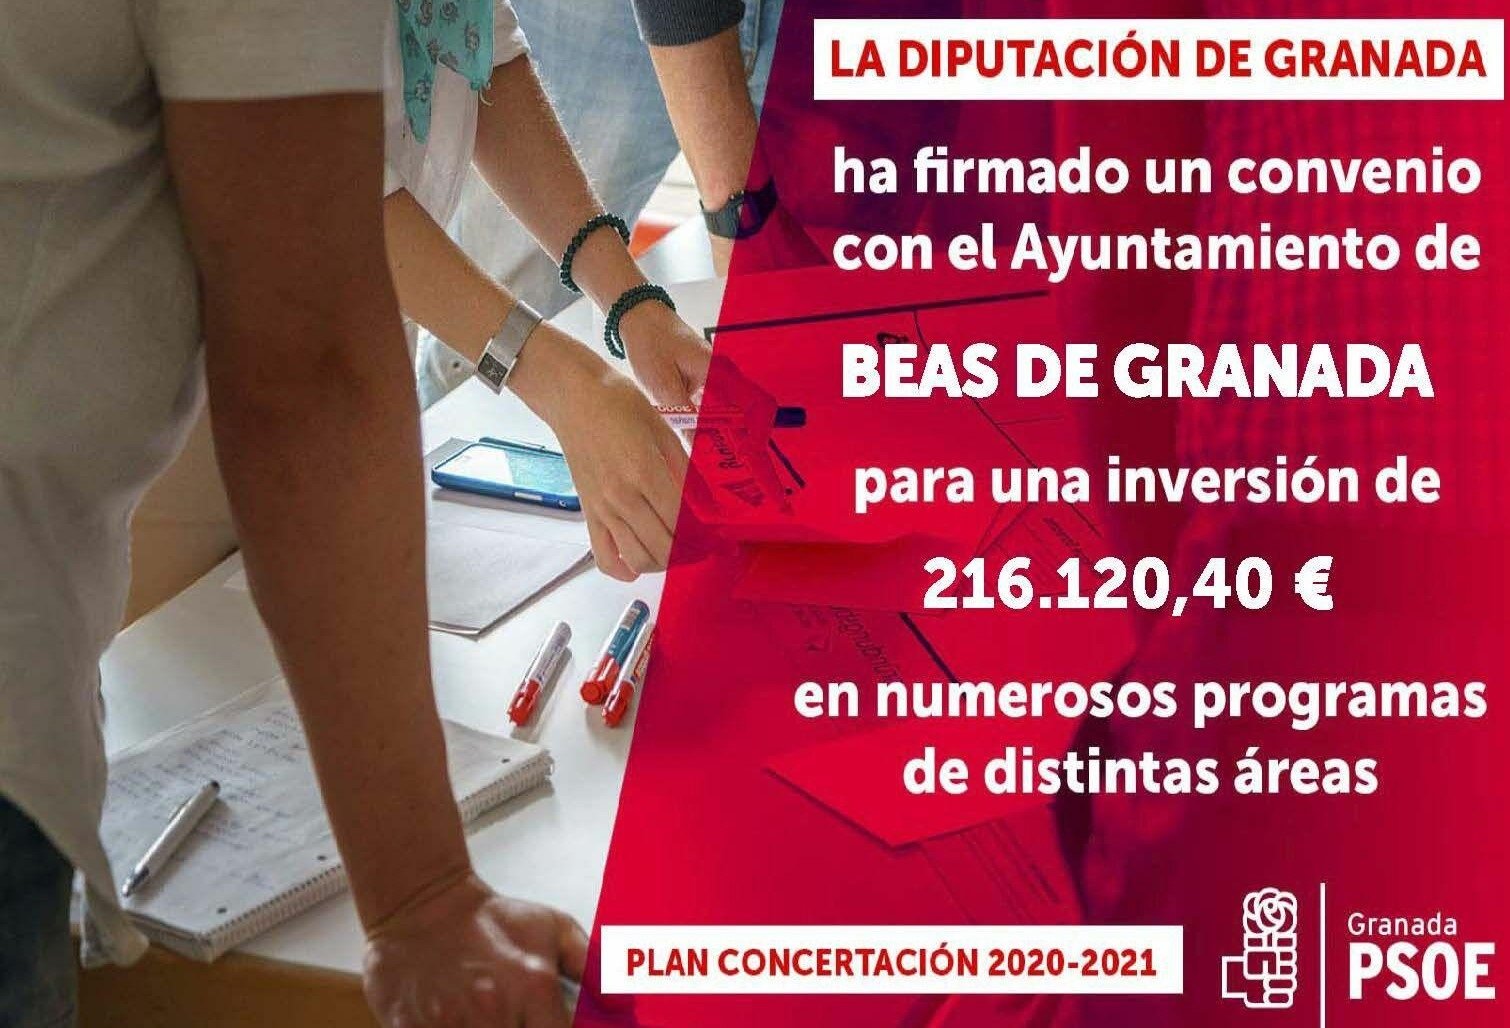 El PP advierte de una campaña «propagandística» del PSOE «sirviéndose» de su gestión en Diputación